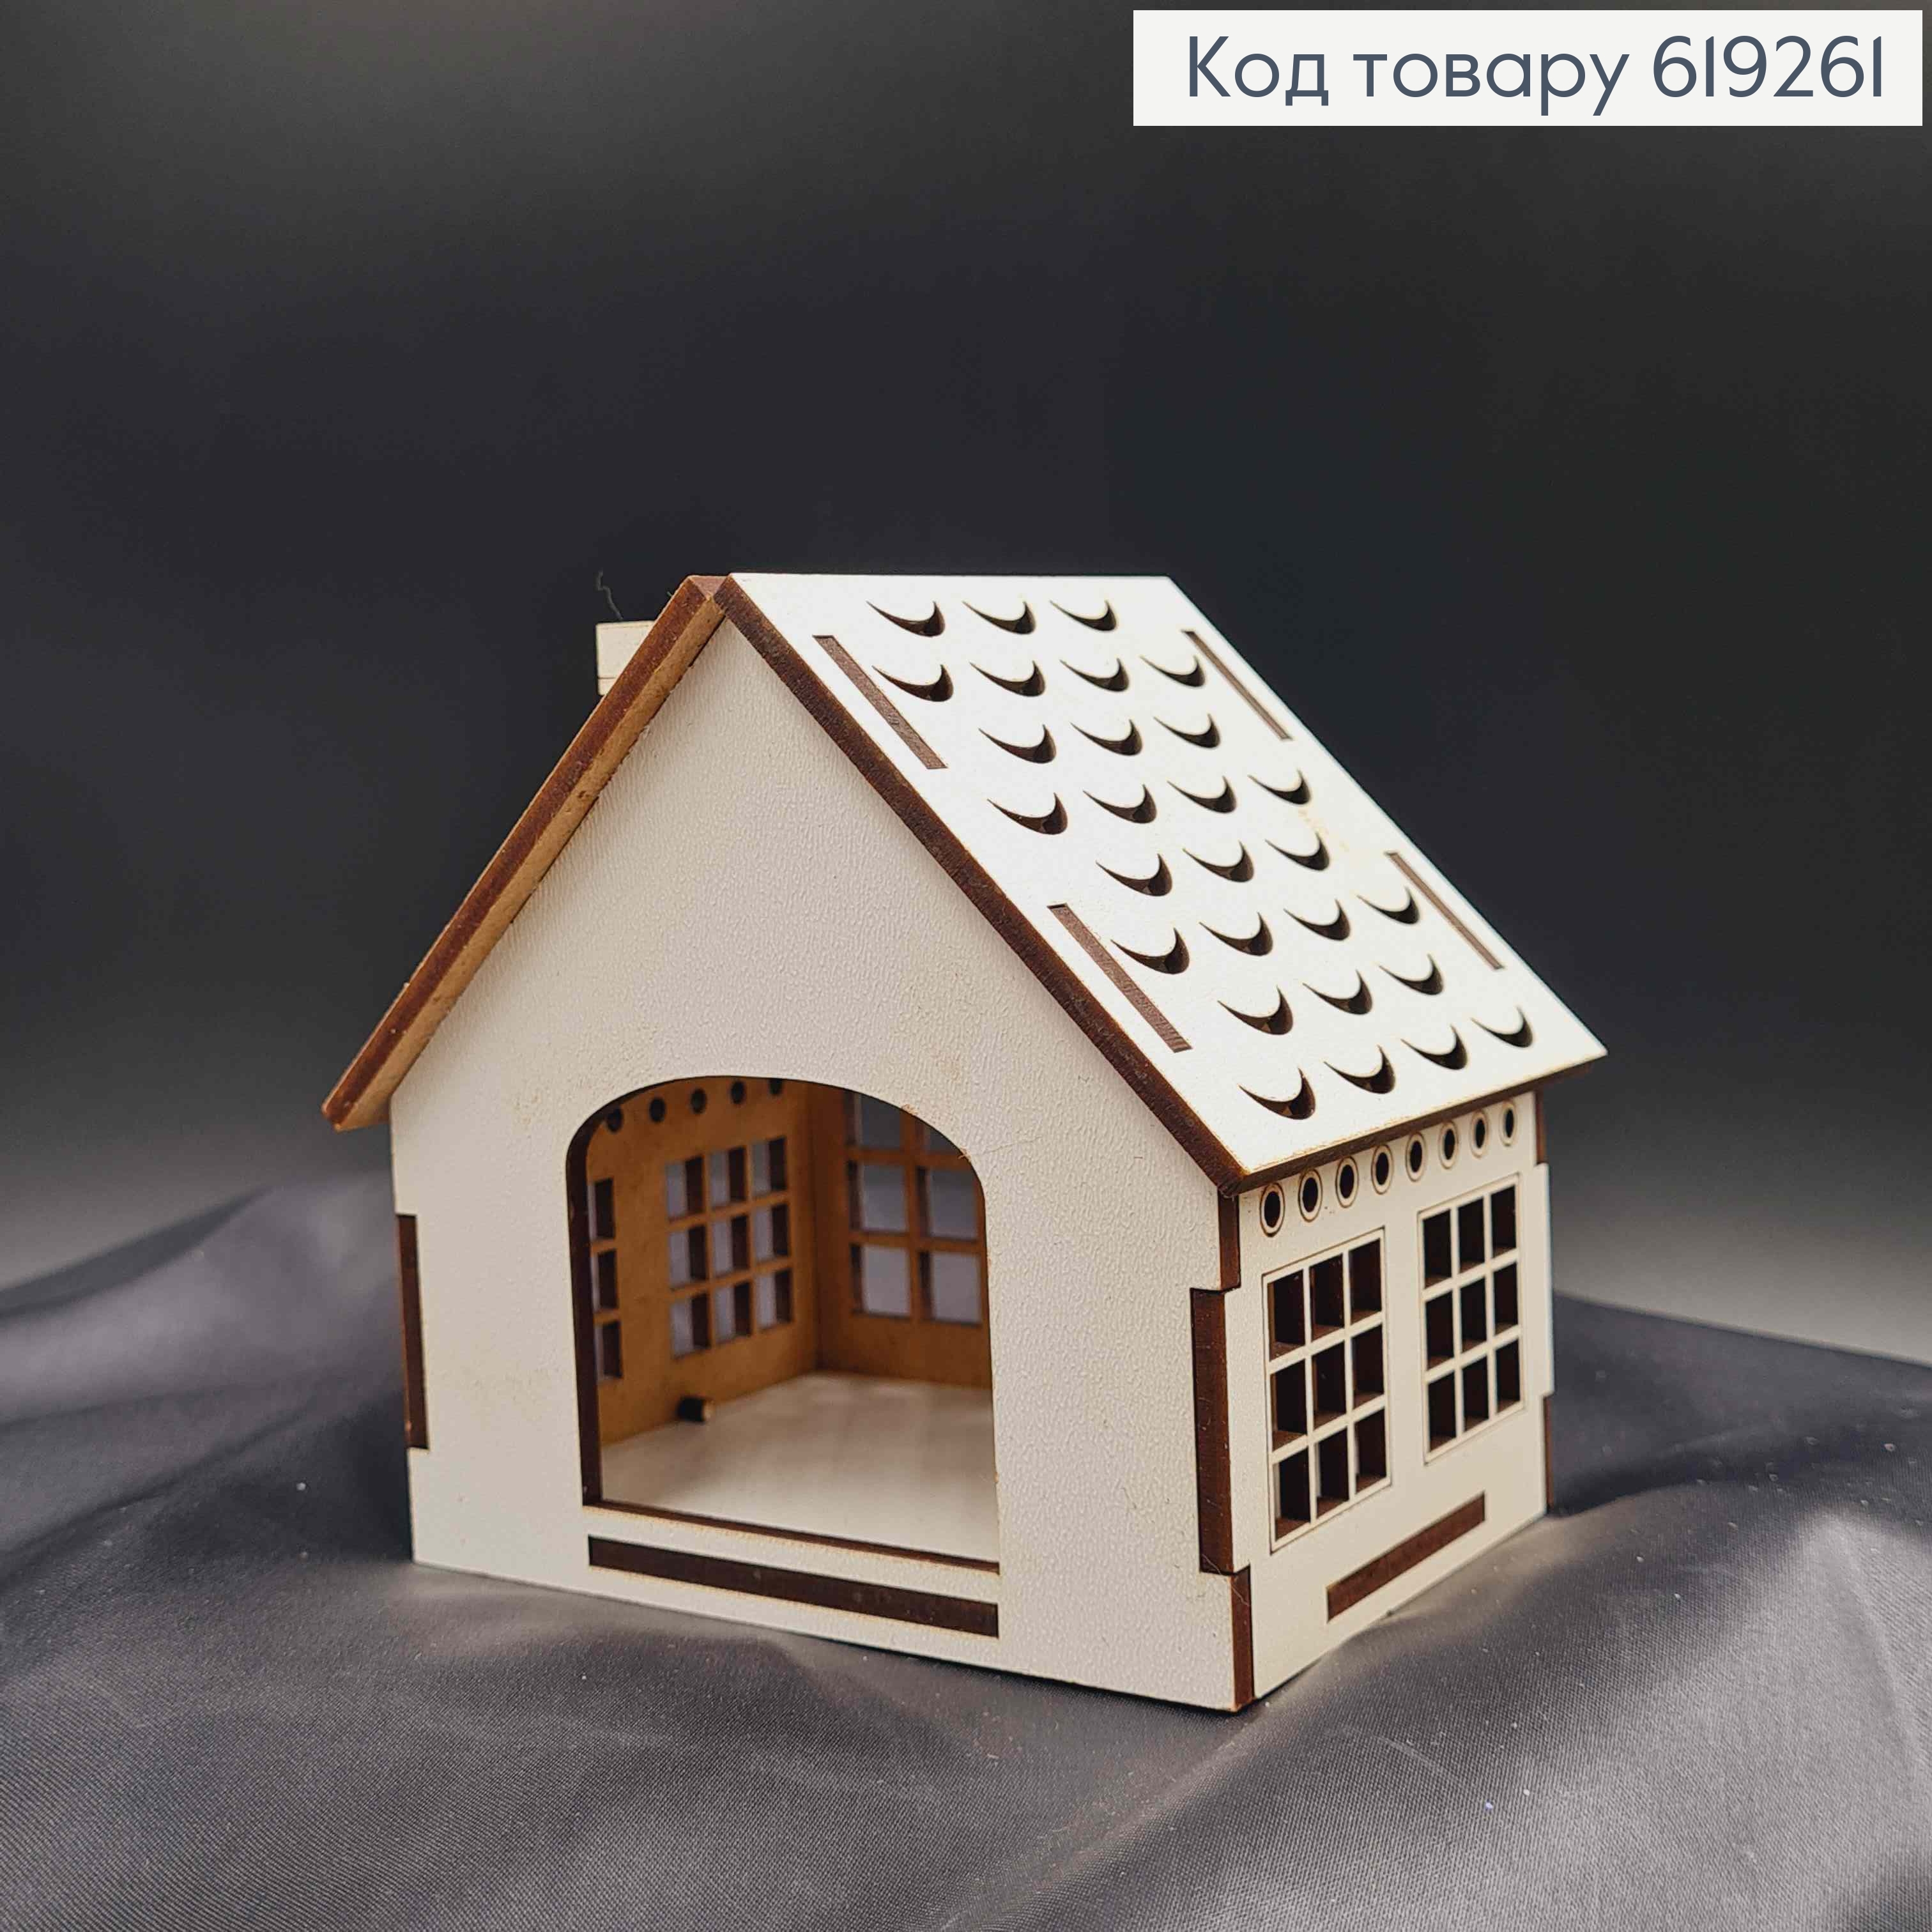 Подсвечник, деревянный белый домик, с витражными окошками, 10*11*8см, Украина. 619261 фото 2